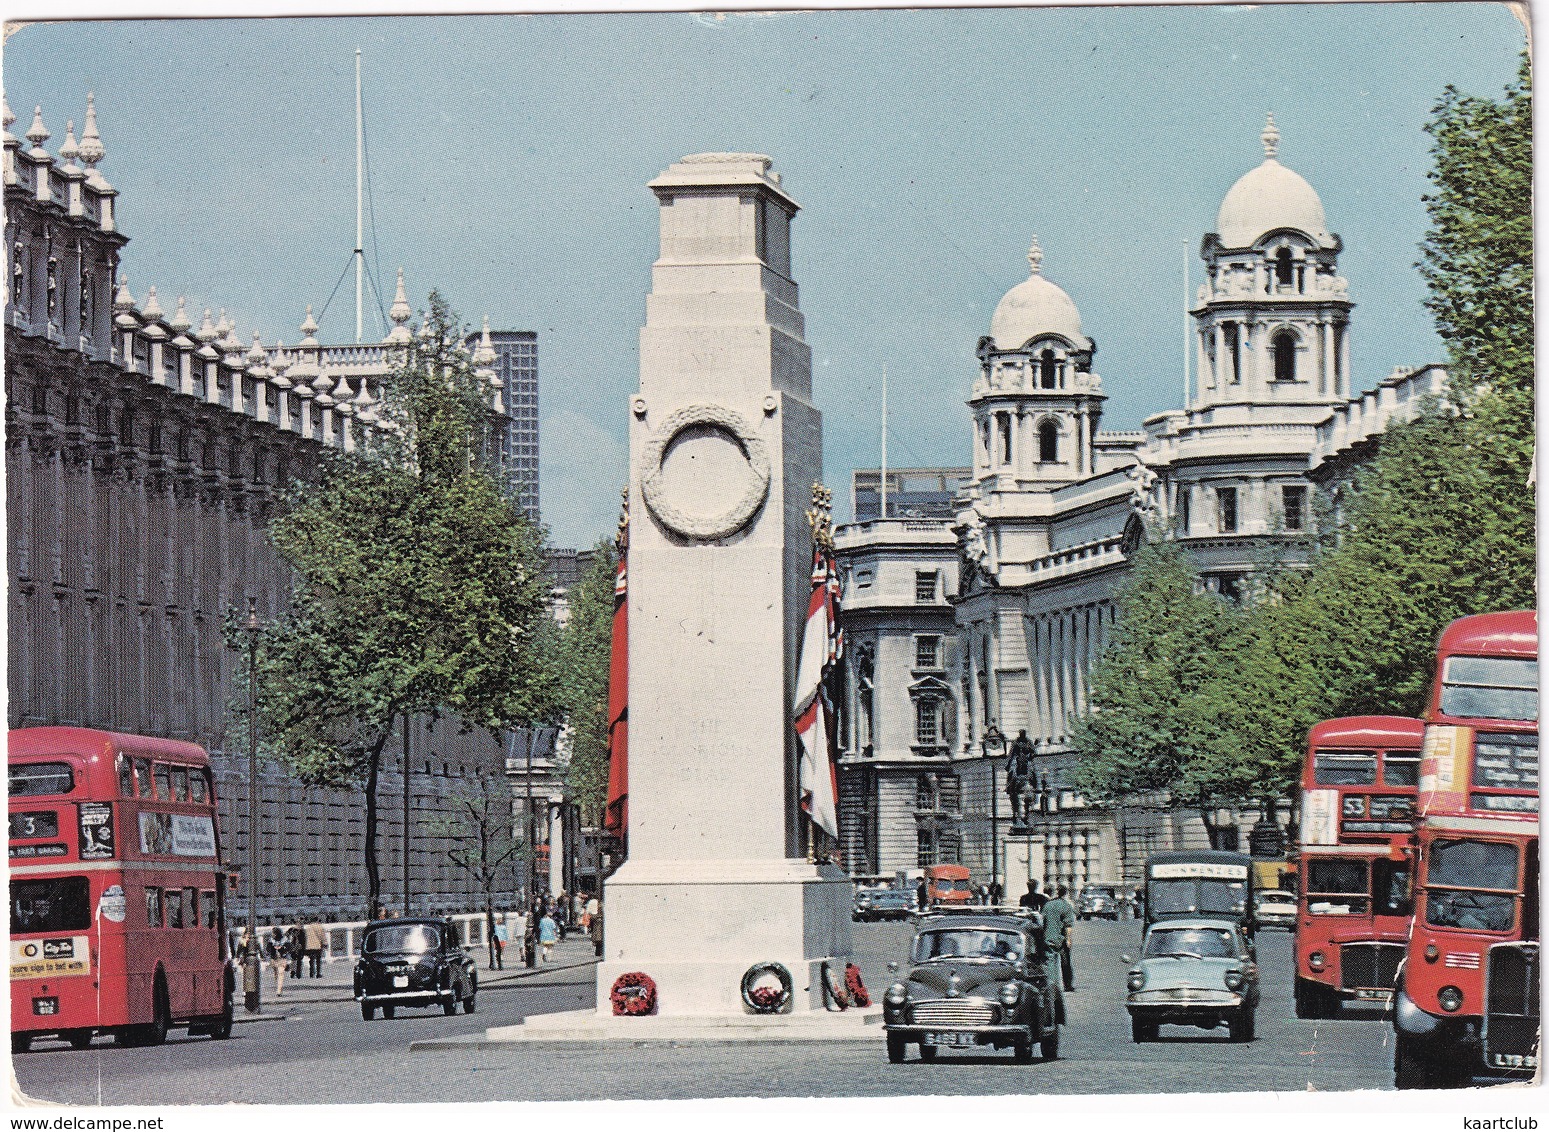 London: MORRIS MINOR, FORD ANGLIA, AUSTIN FX TAXI, DOUBLE DECK BUSES - Cenotaph, Whitehall - Voitures De Tourisme